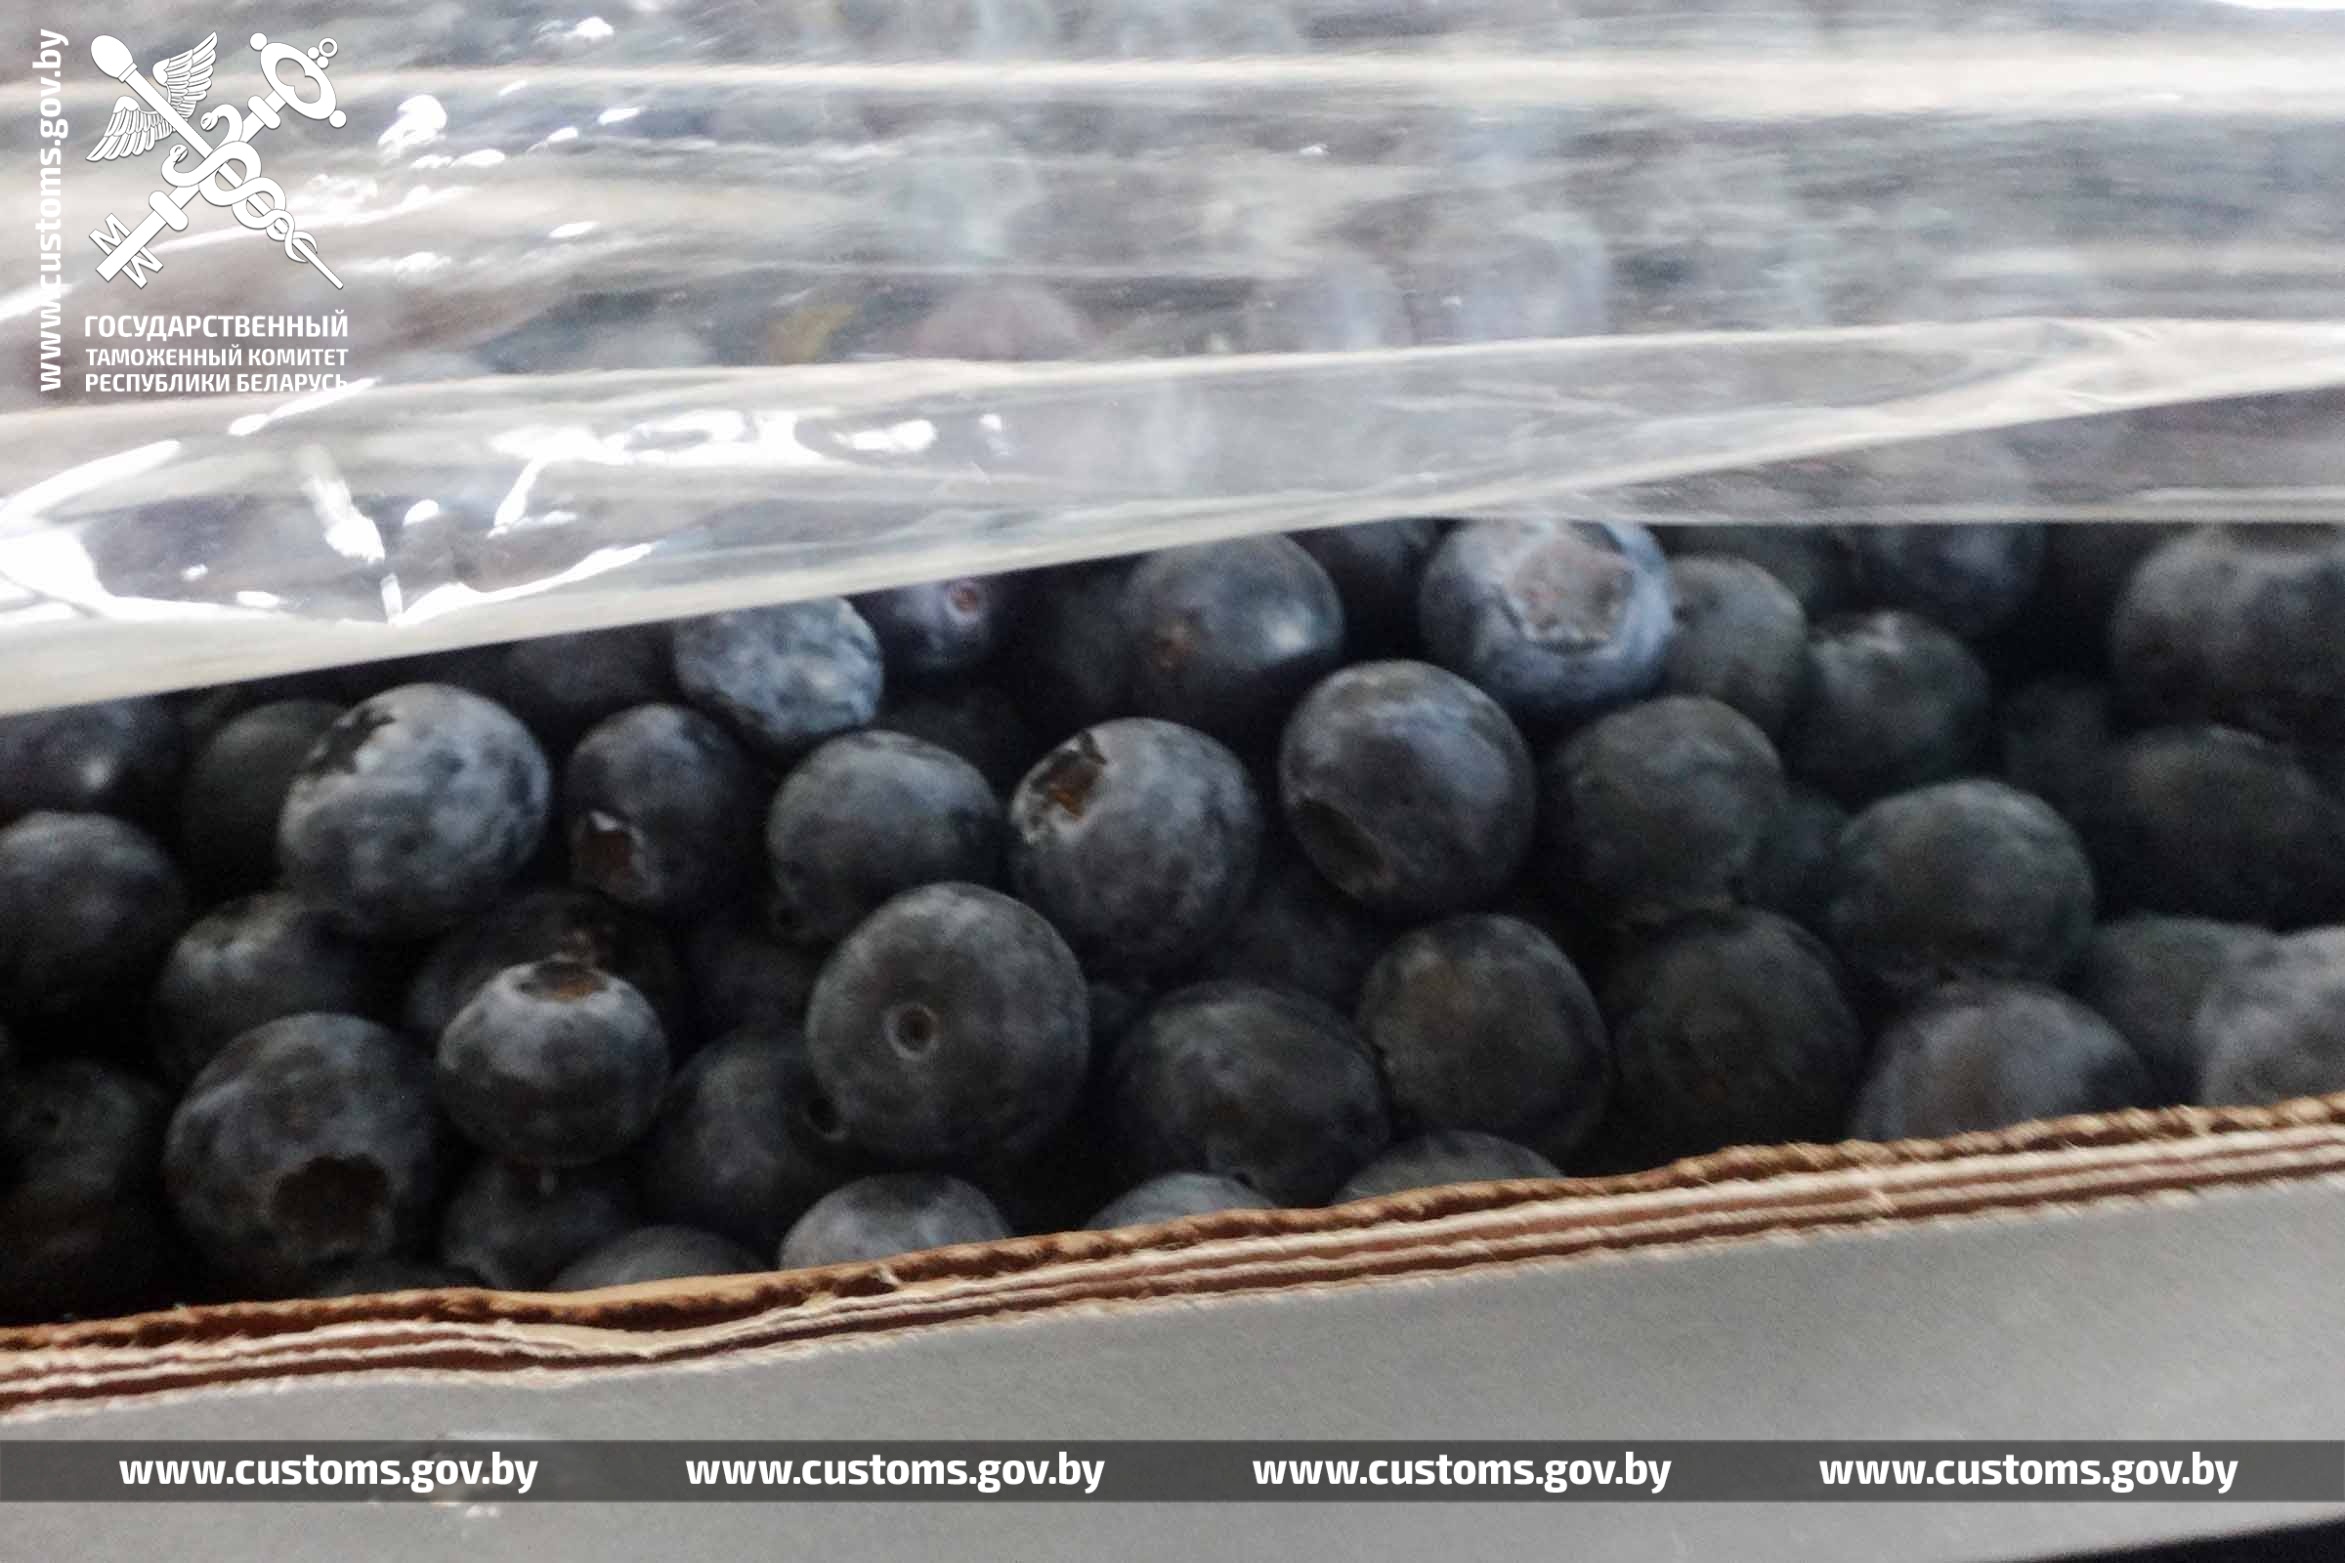 Беларусская таможня задержала клубнику, манго, виноград и офисную бумагу из России